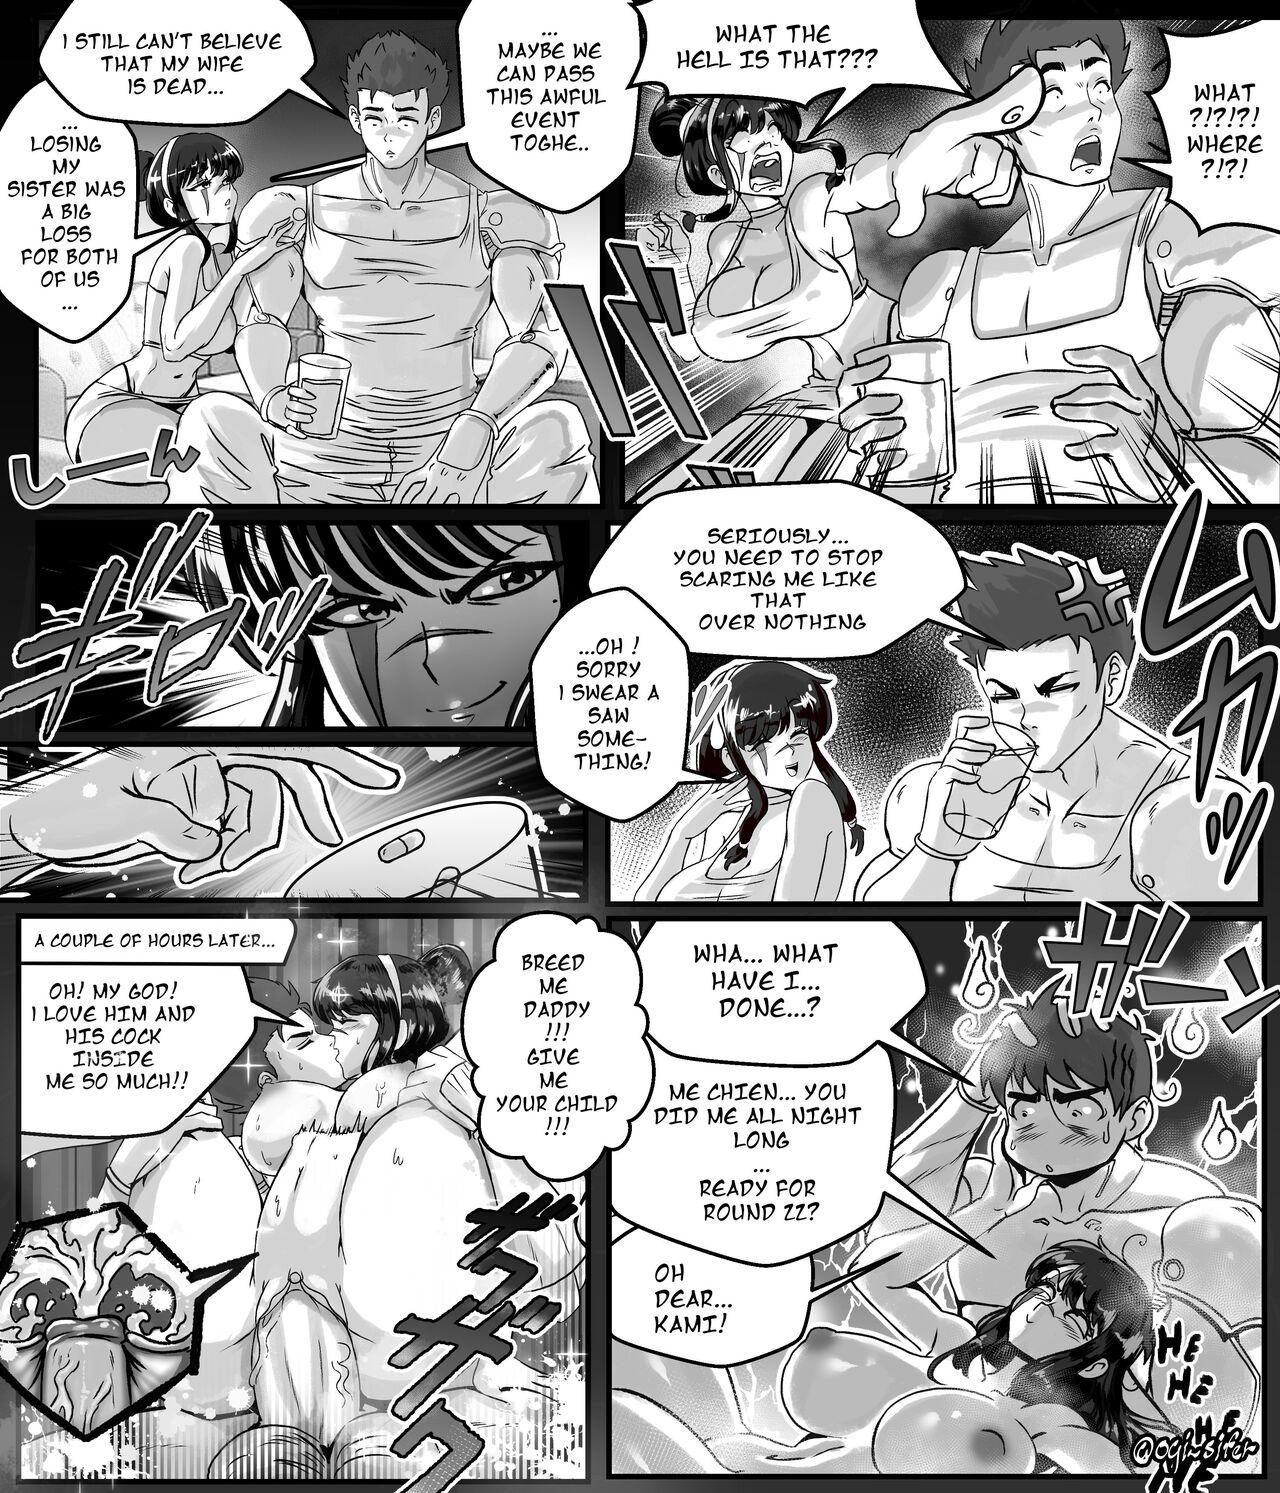 Hard Cock Ogi manga comics collection - Original Dragon ball z Dragon ball Dragon ball super Tribbing - Picture 1